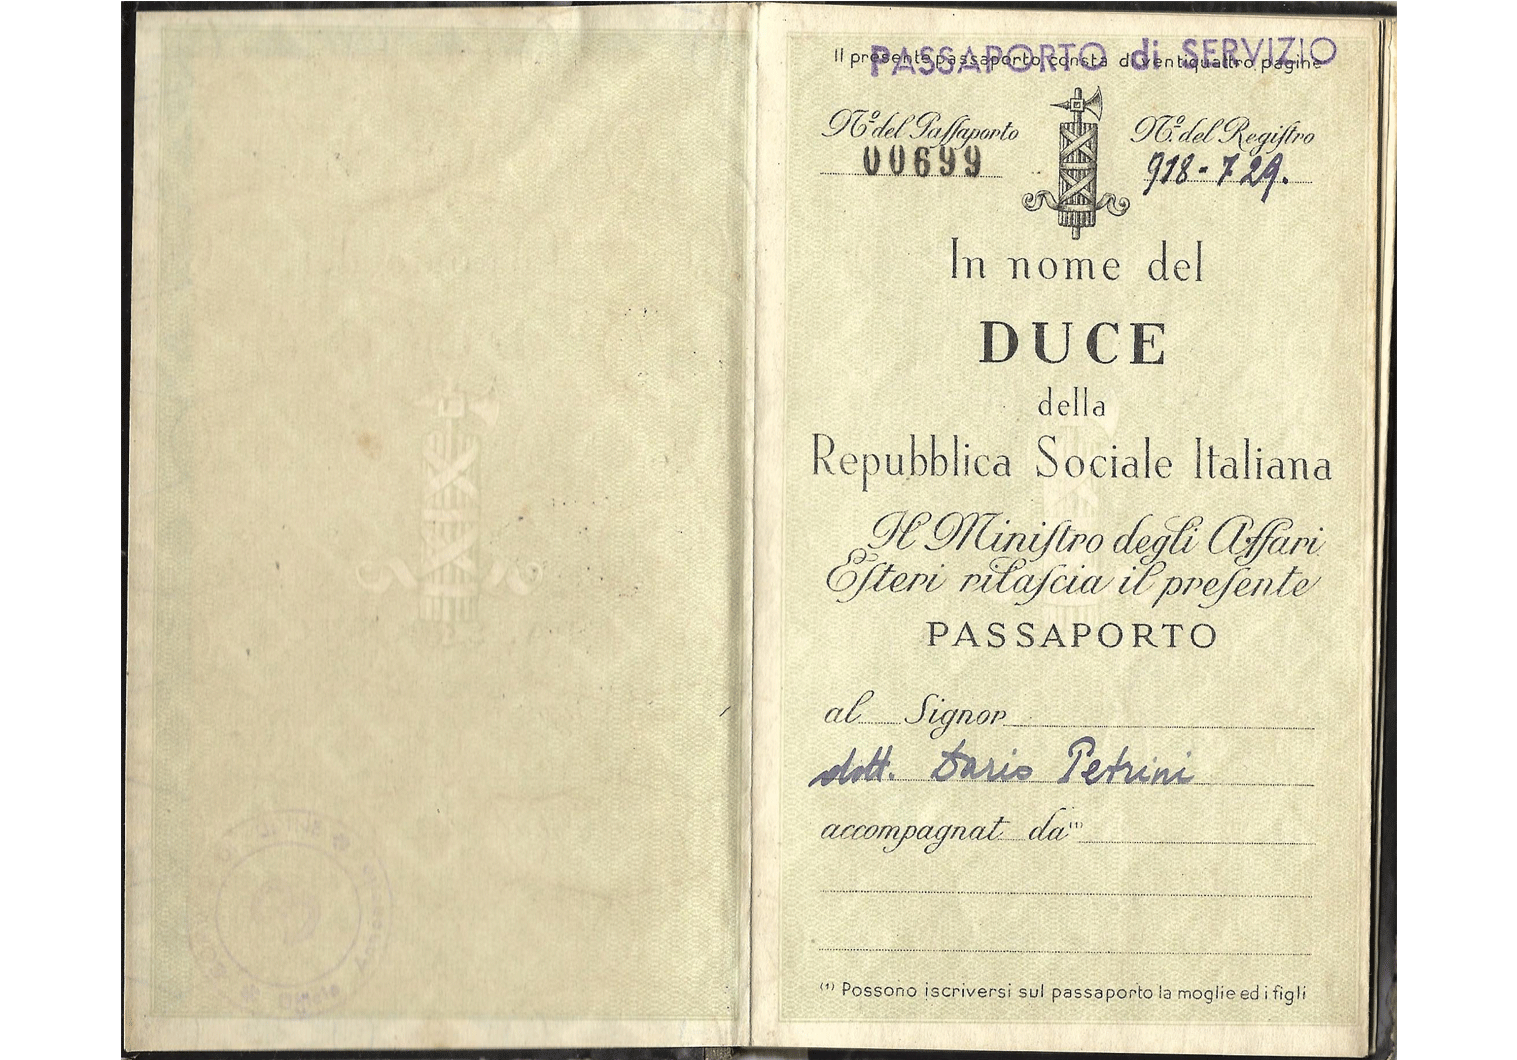 1944 Passaporto di Servizio (RSI)